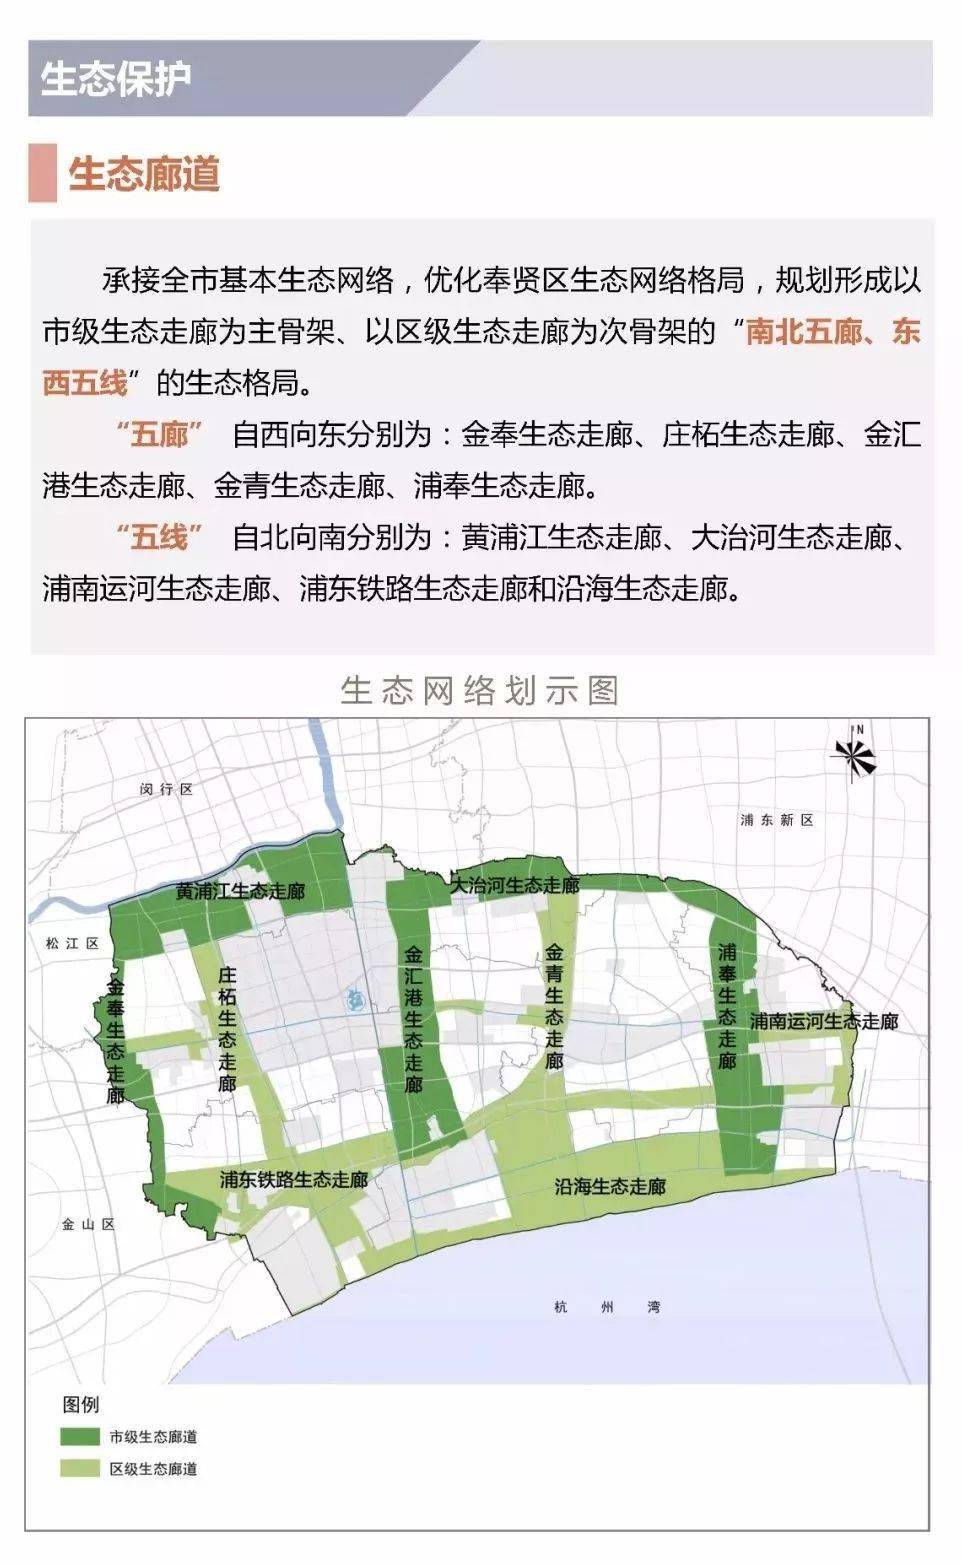 上海奉贤头桥新规划图片